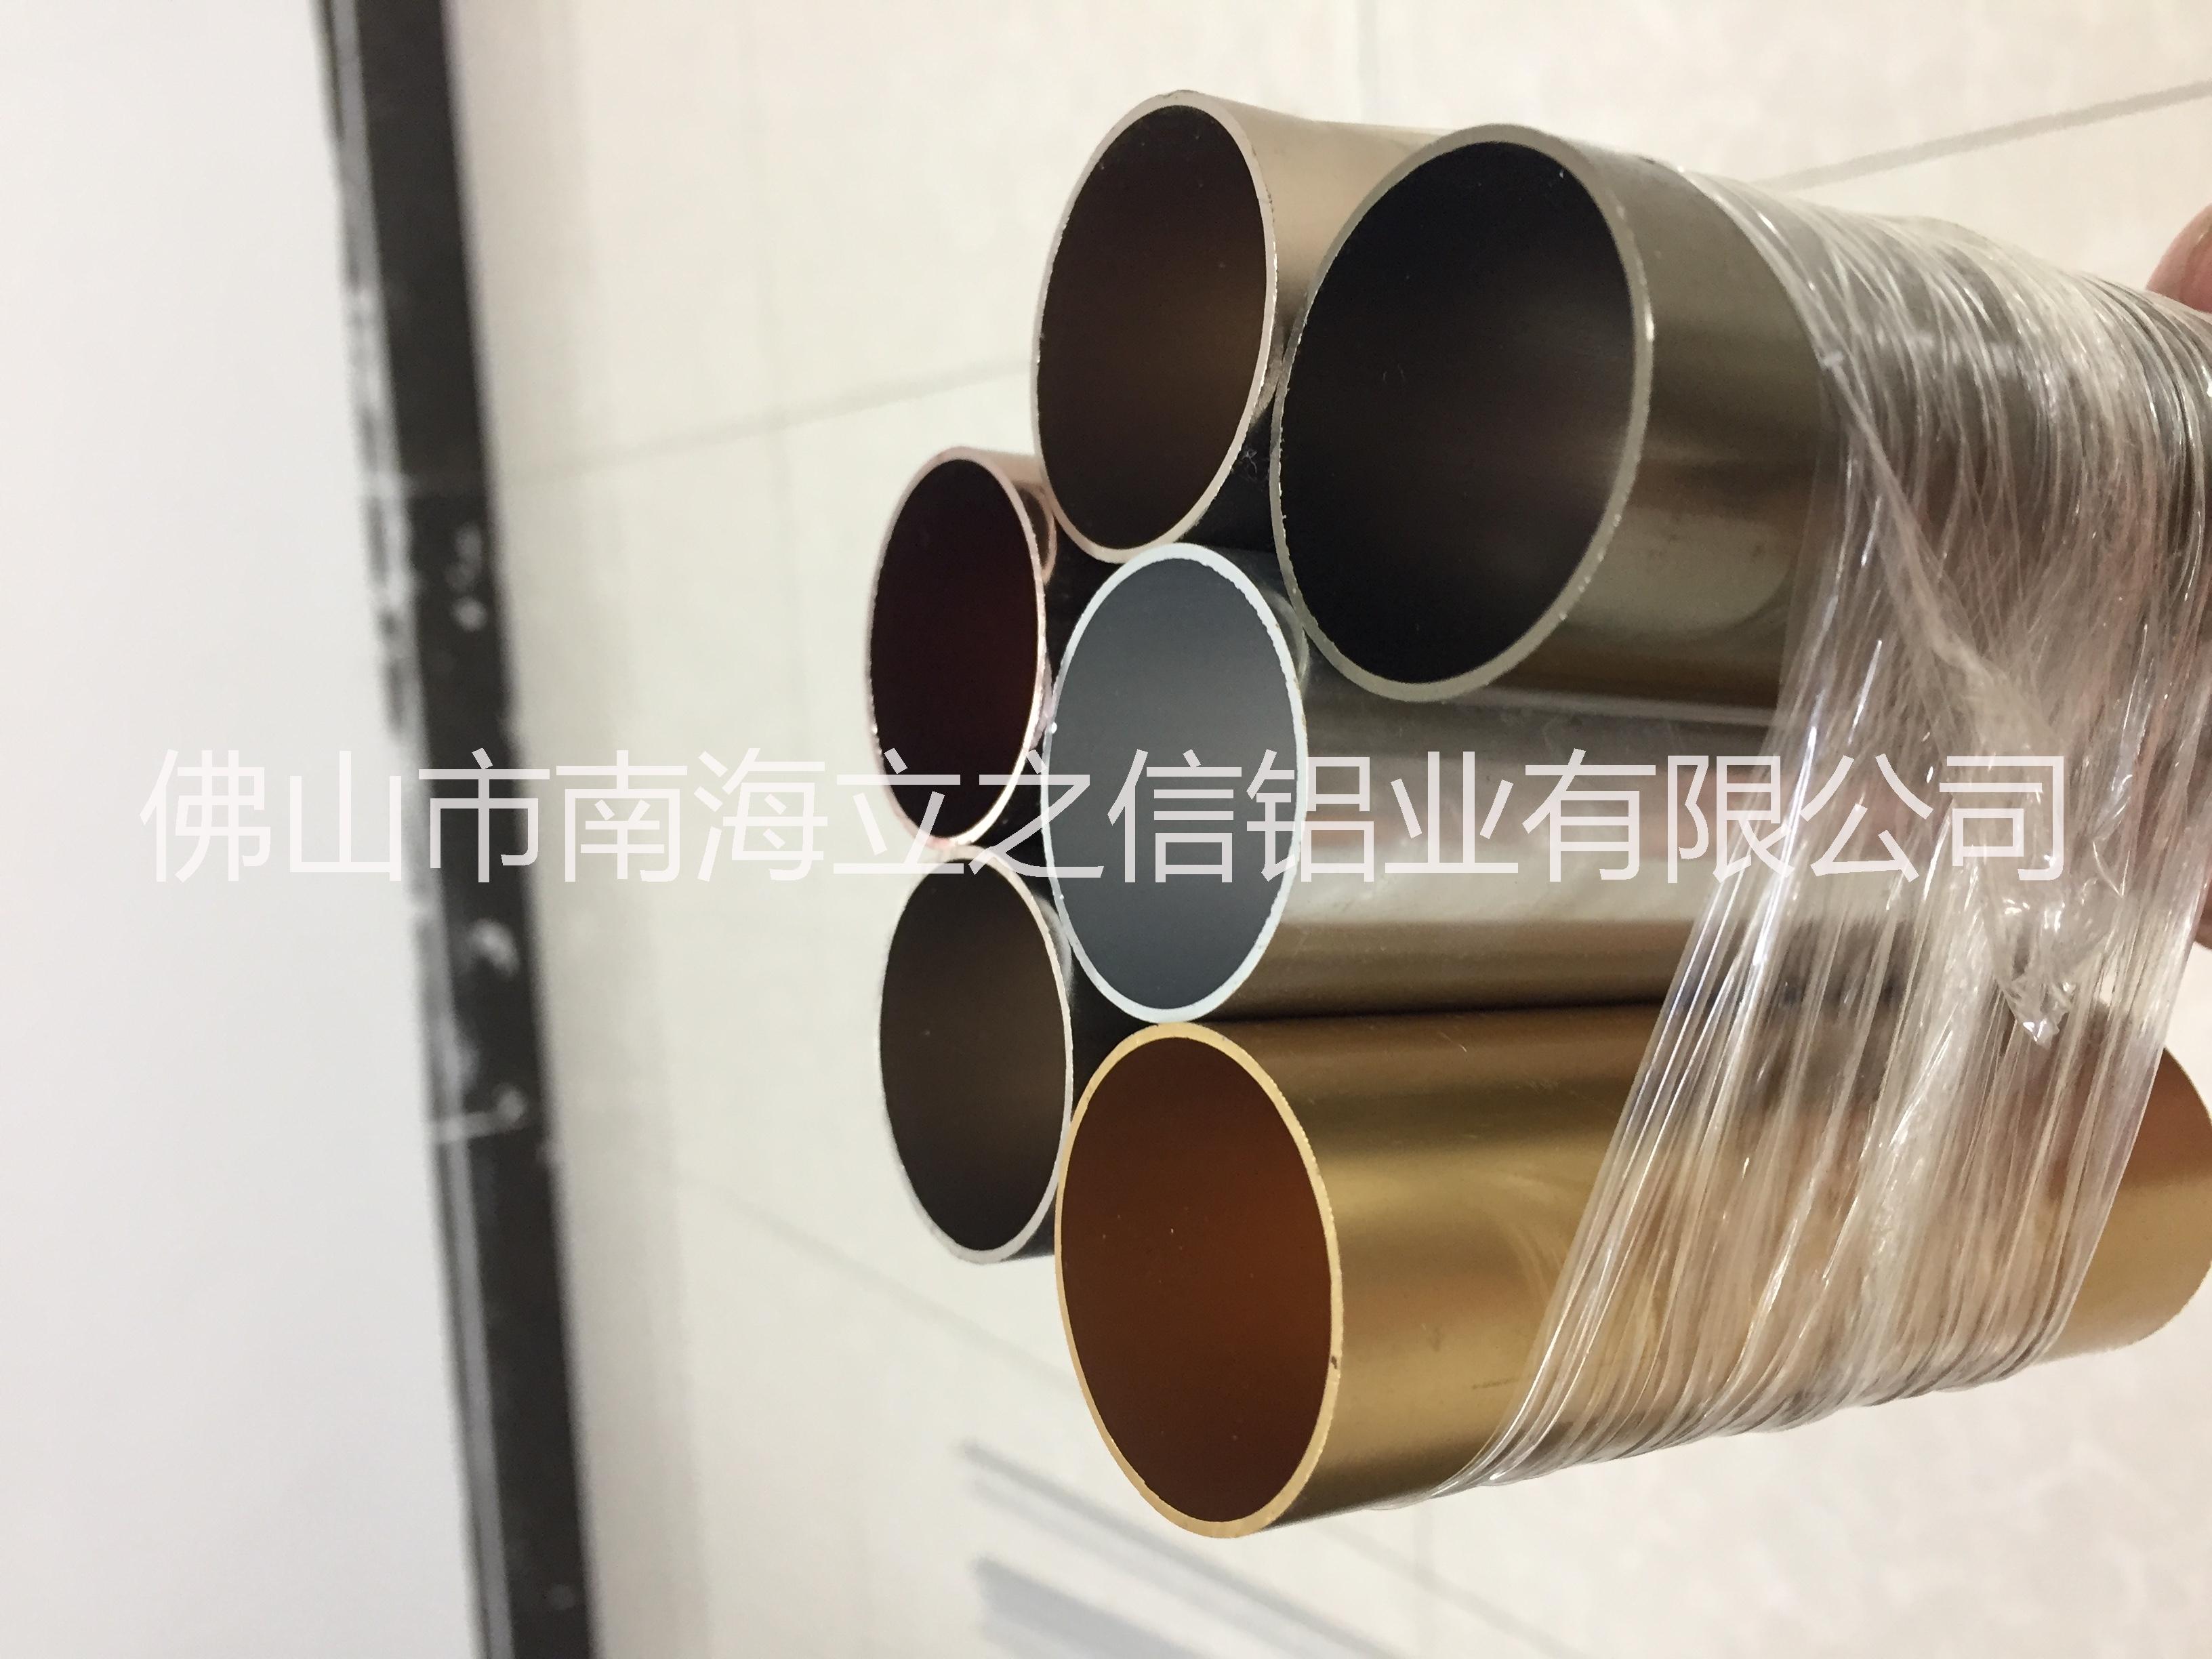 佛山圆管厂家 生产铝合金圆管直销 铝型材圆管厂家 圆管供应商 铝